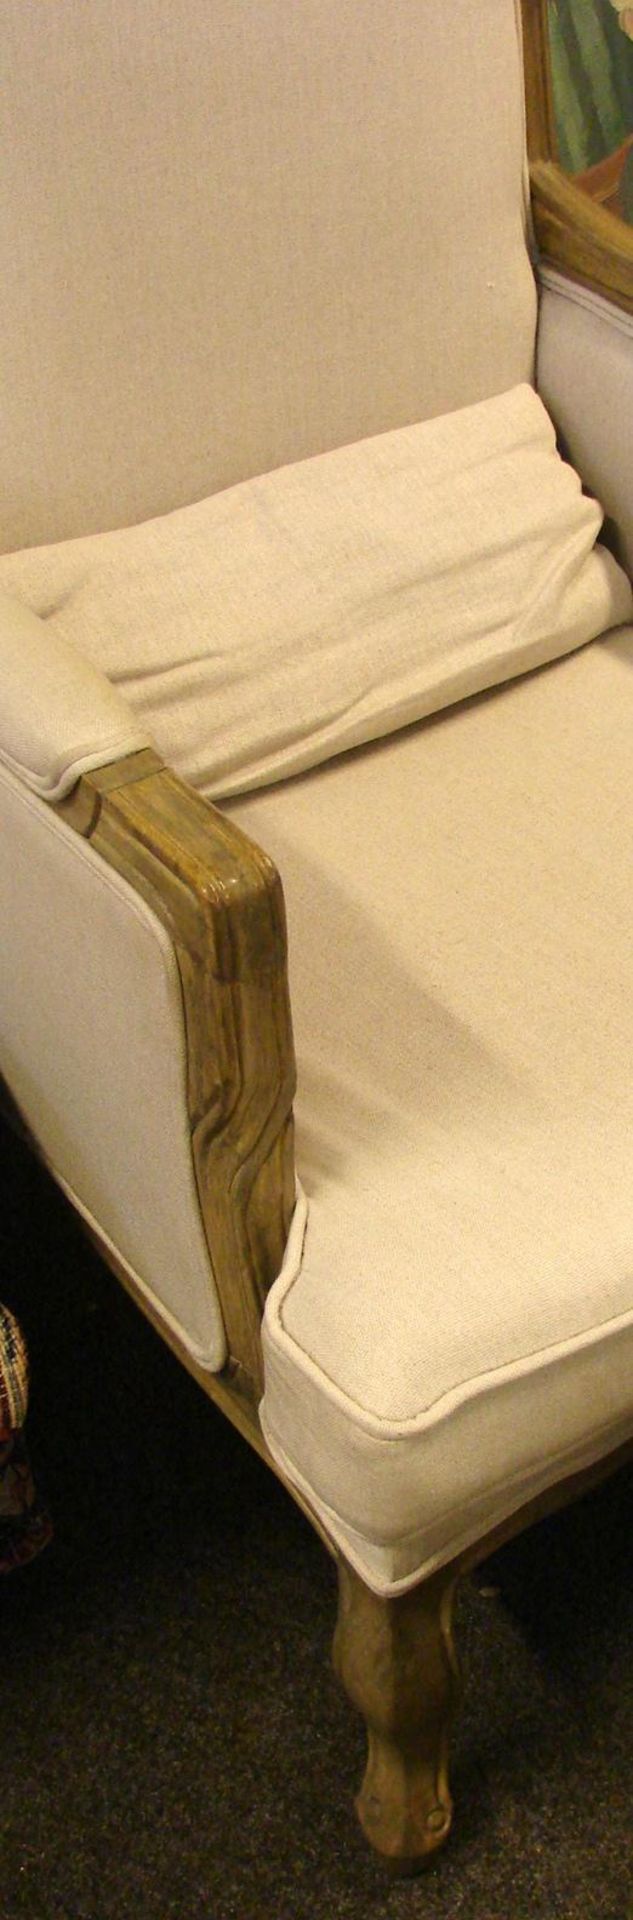 Sessel mit Fusshocker, Holzrahmen, beigefarbender Bezug, Zustand gut, neuzeitlich - Image 2 of 2